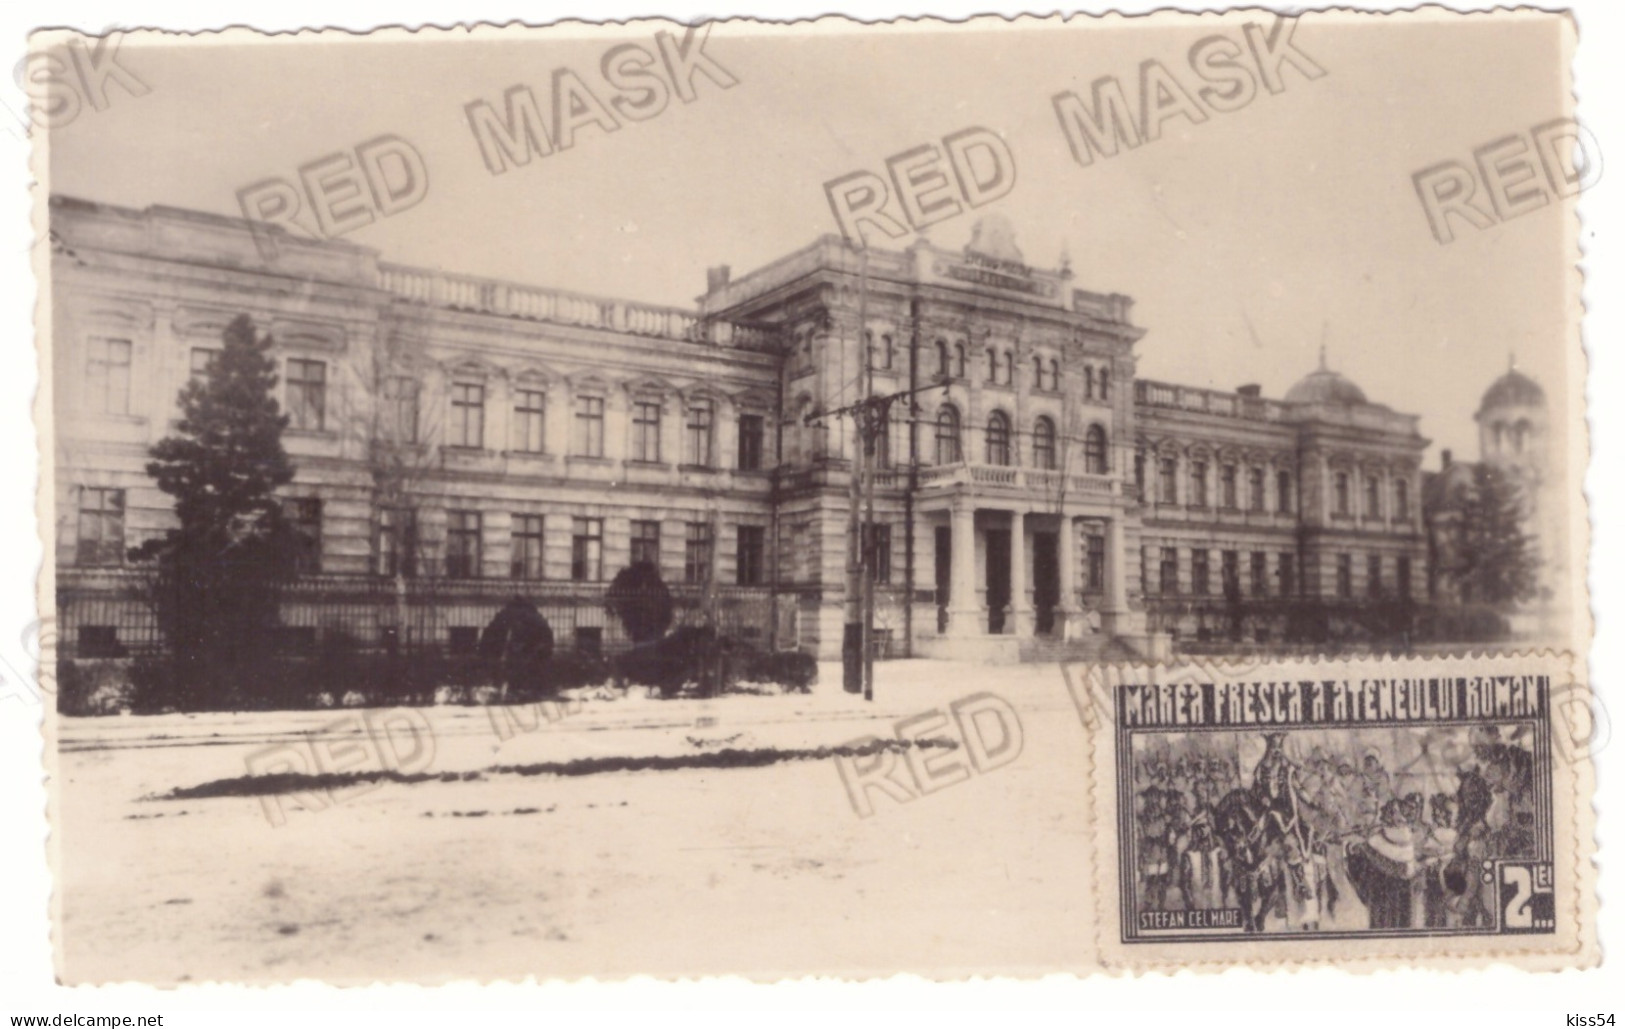 MOL 8 - 21607 CHISINAU, Military School, Moldova - Old Postcard, Real PHOTO - Used - 1936 - Moldavië